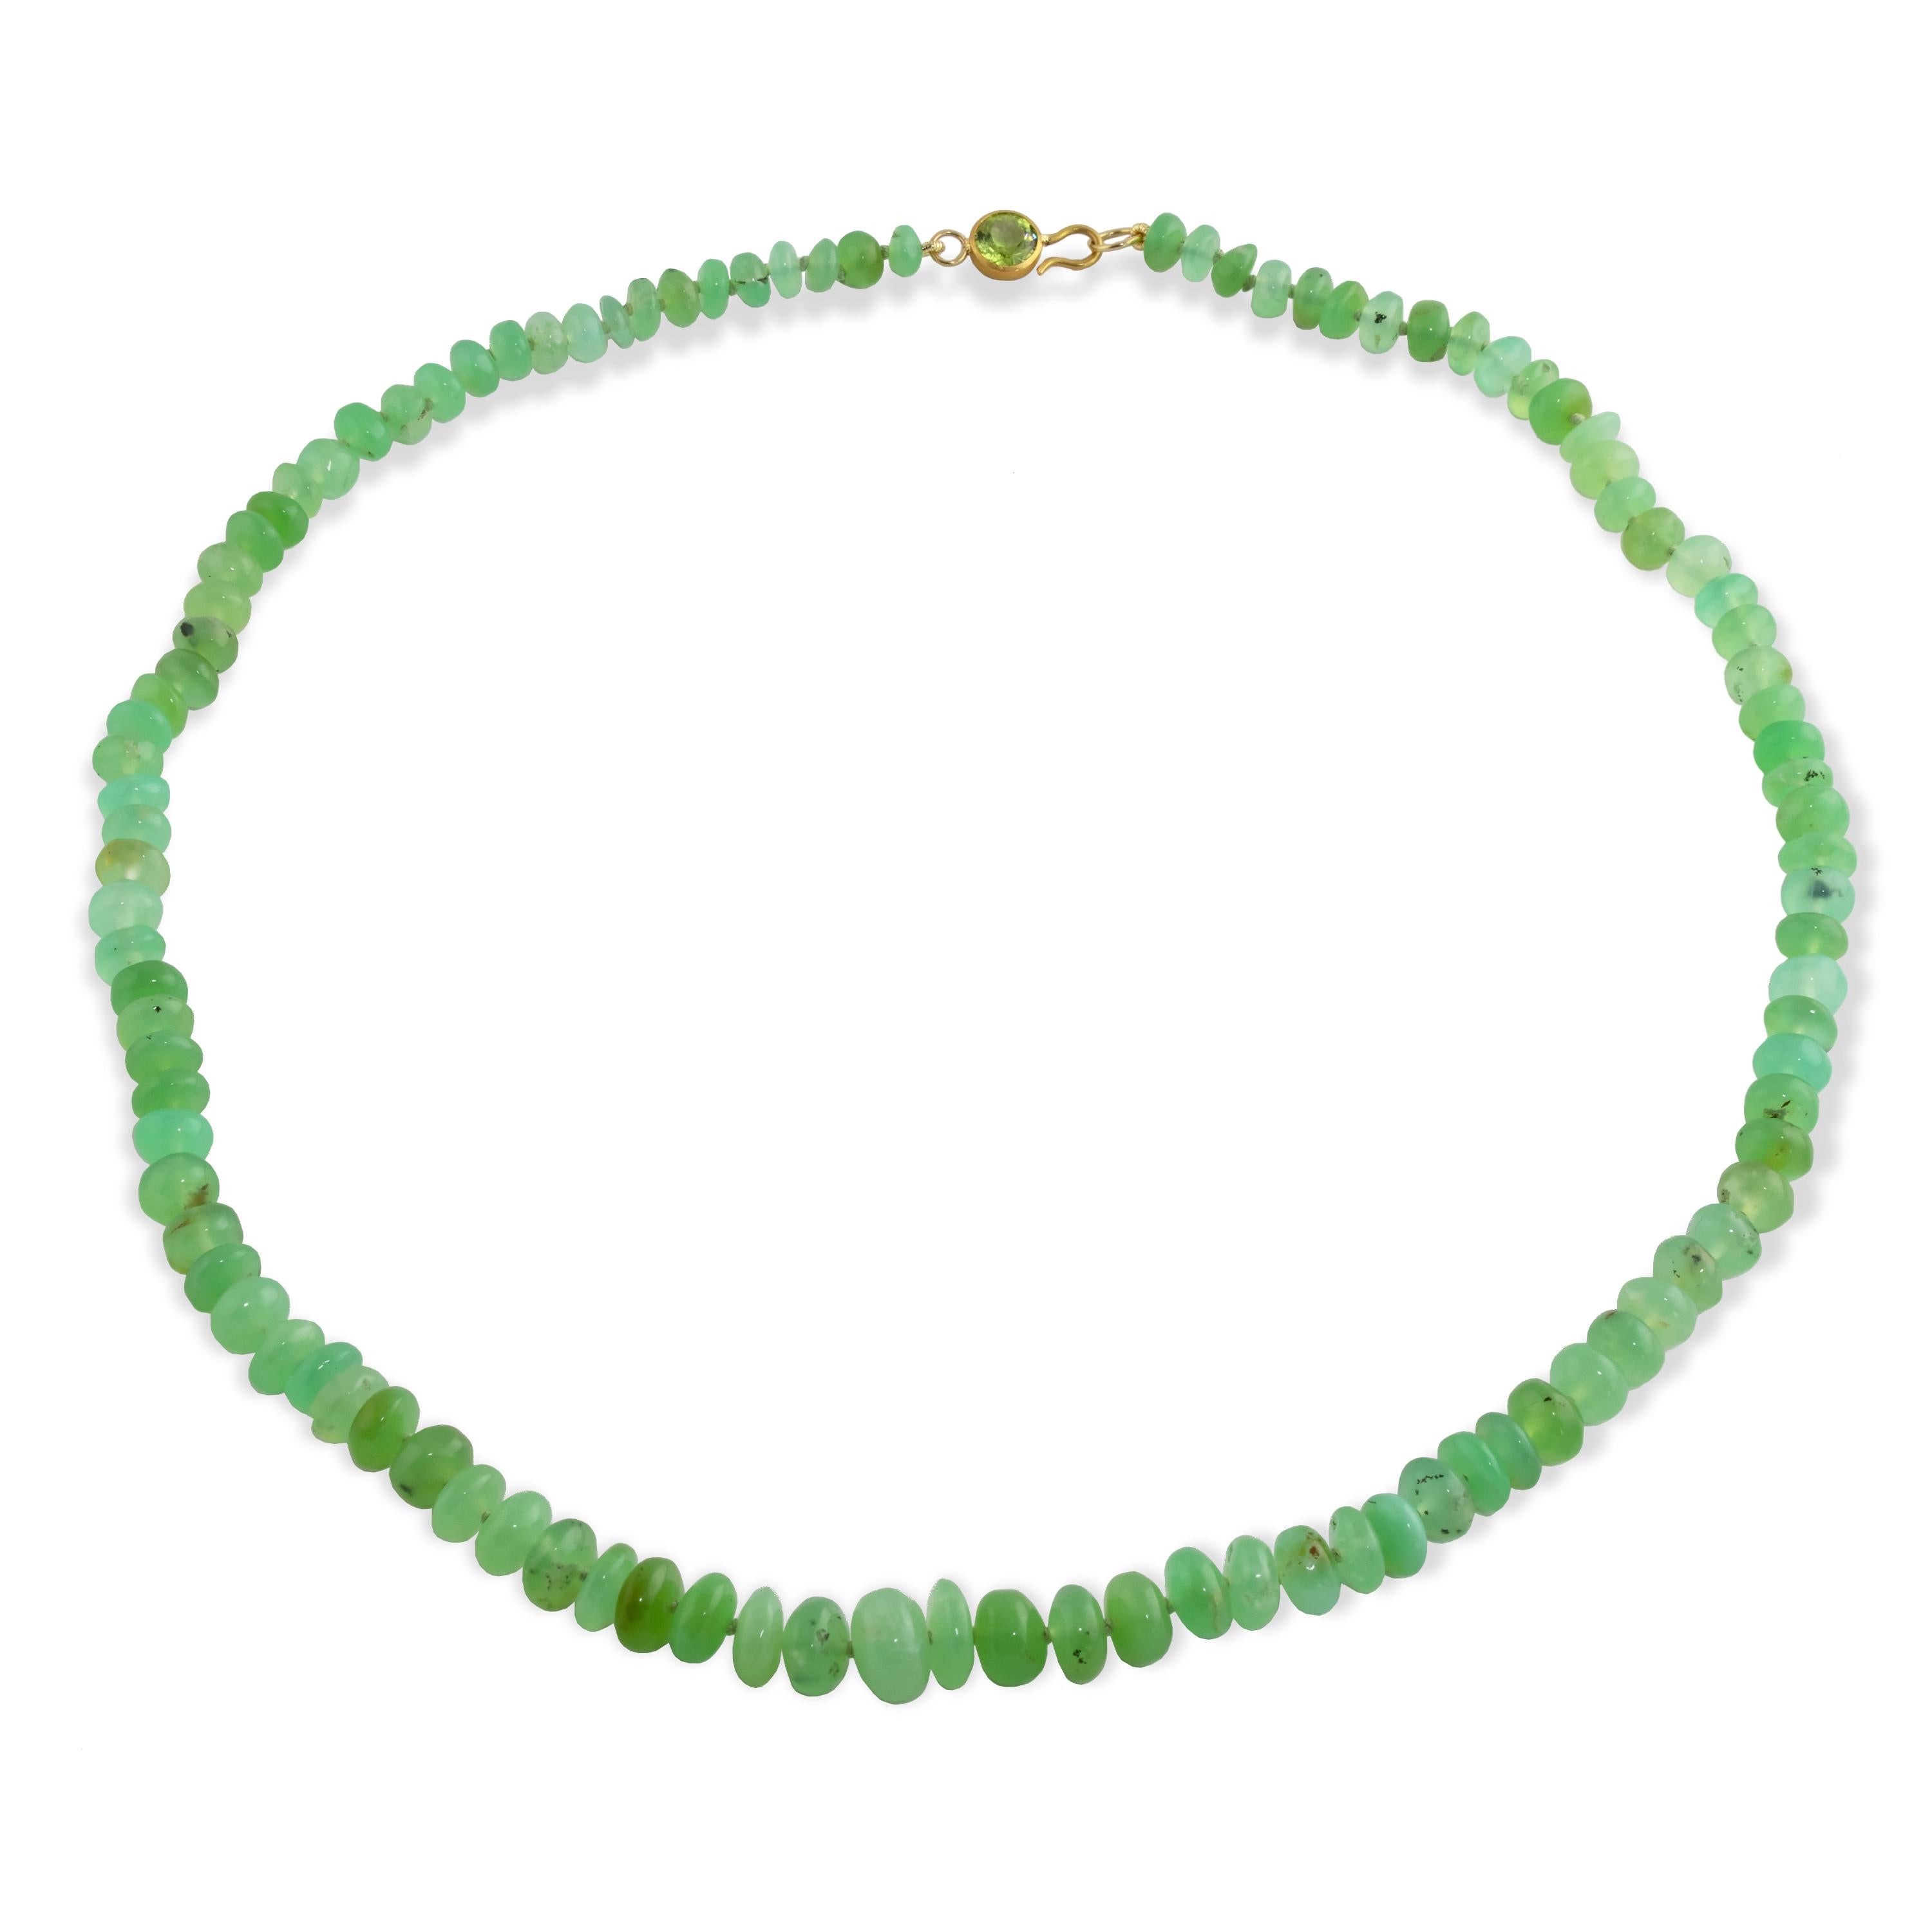 Ein wunderschönes, leuchtend grünes Collier aus natürlichem Chrysopras.  Perfekt zum Kombinieren mit anderen Halsketten oder zum alleinigen Tragen.  Die Chrysopras-Perlen sind von 7 mm bis 9 mm abgestuft.  
Maße: 18